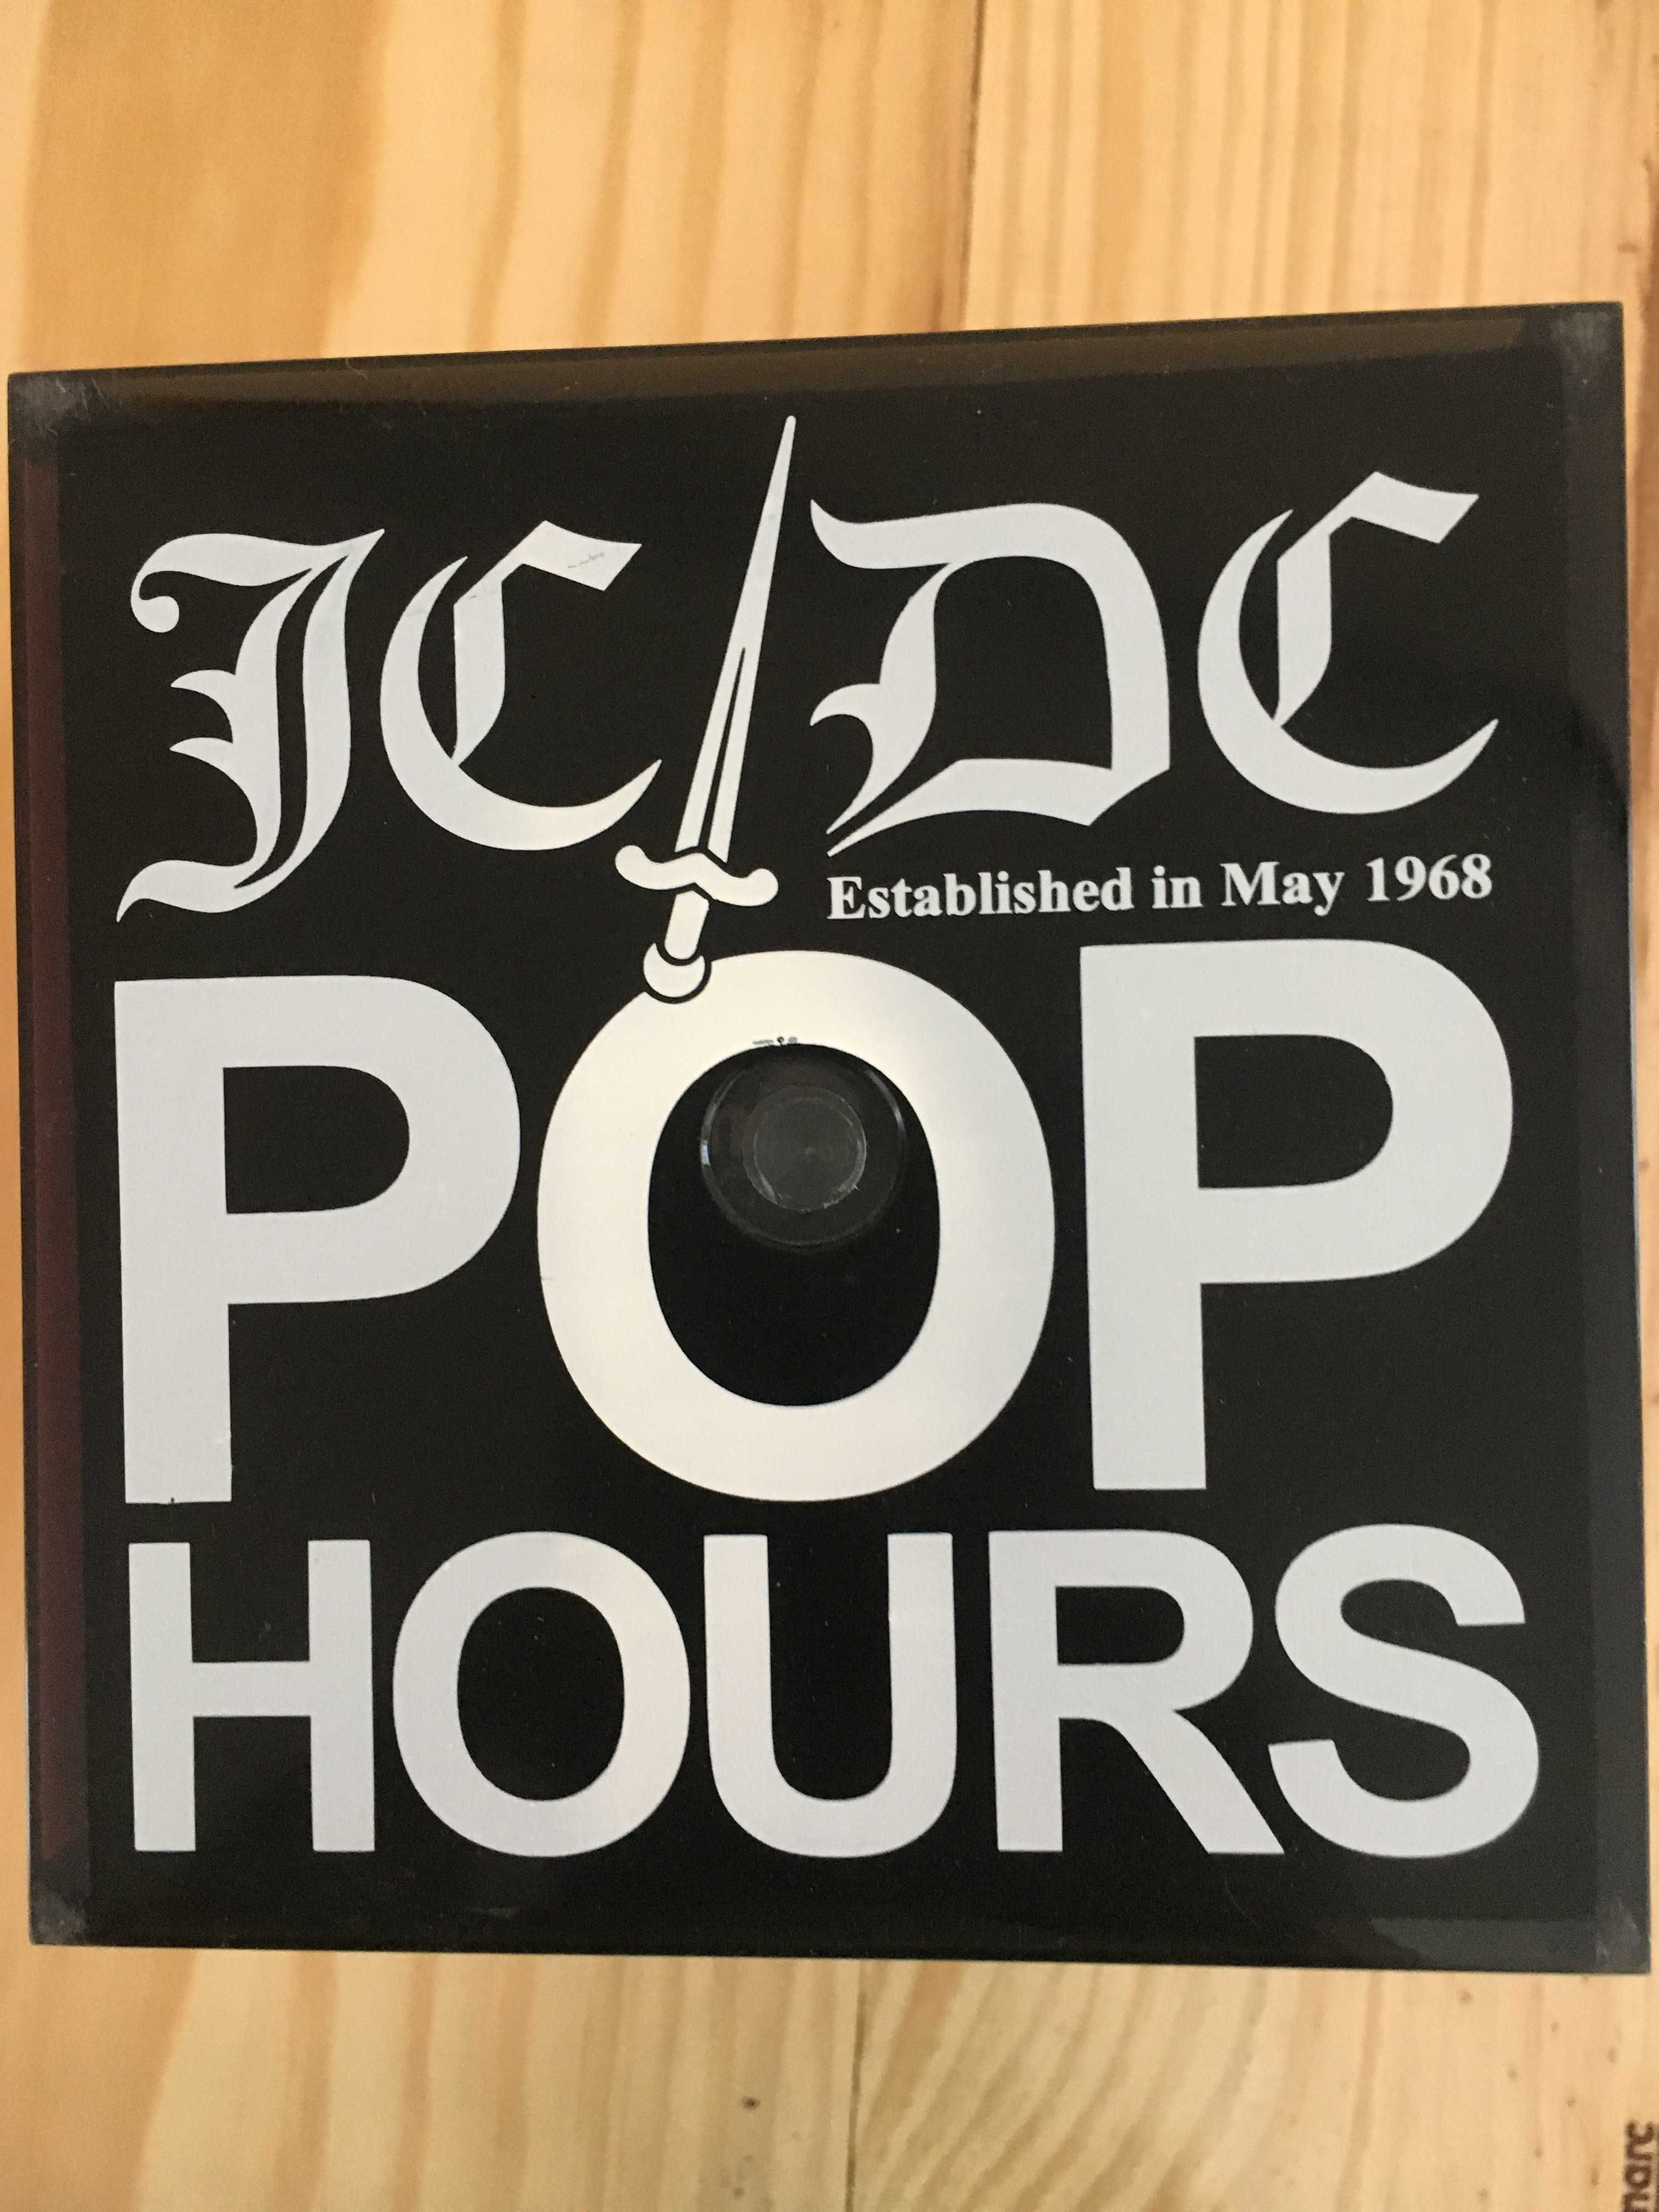 ODM by JCDC Pop Hours  - Vintage  Único